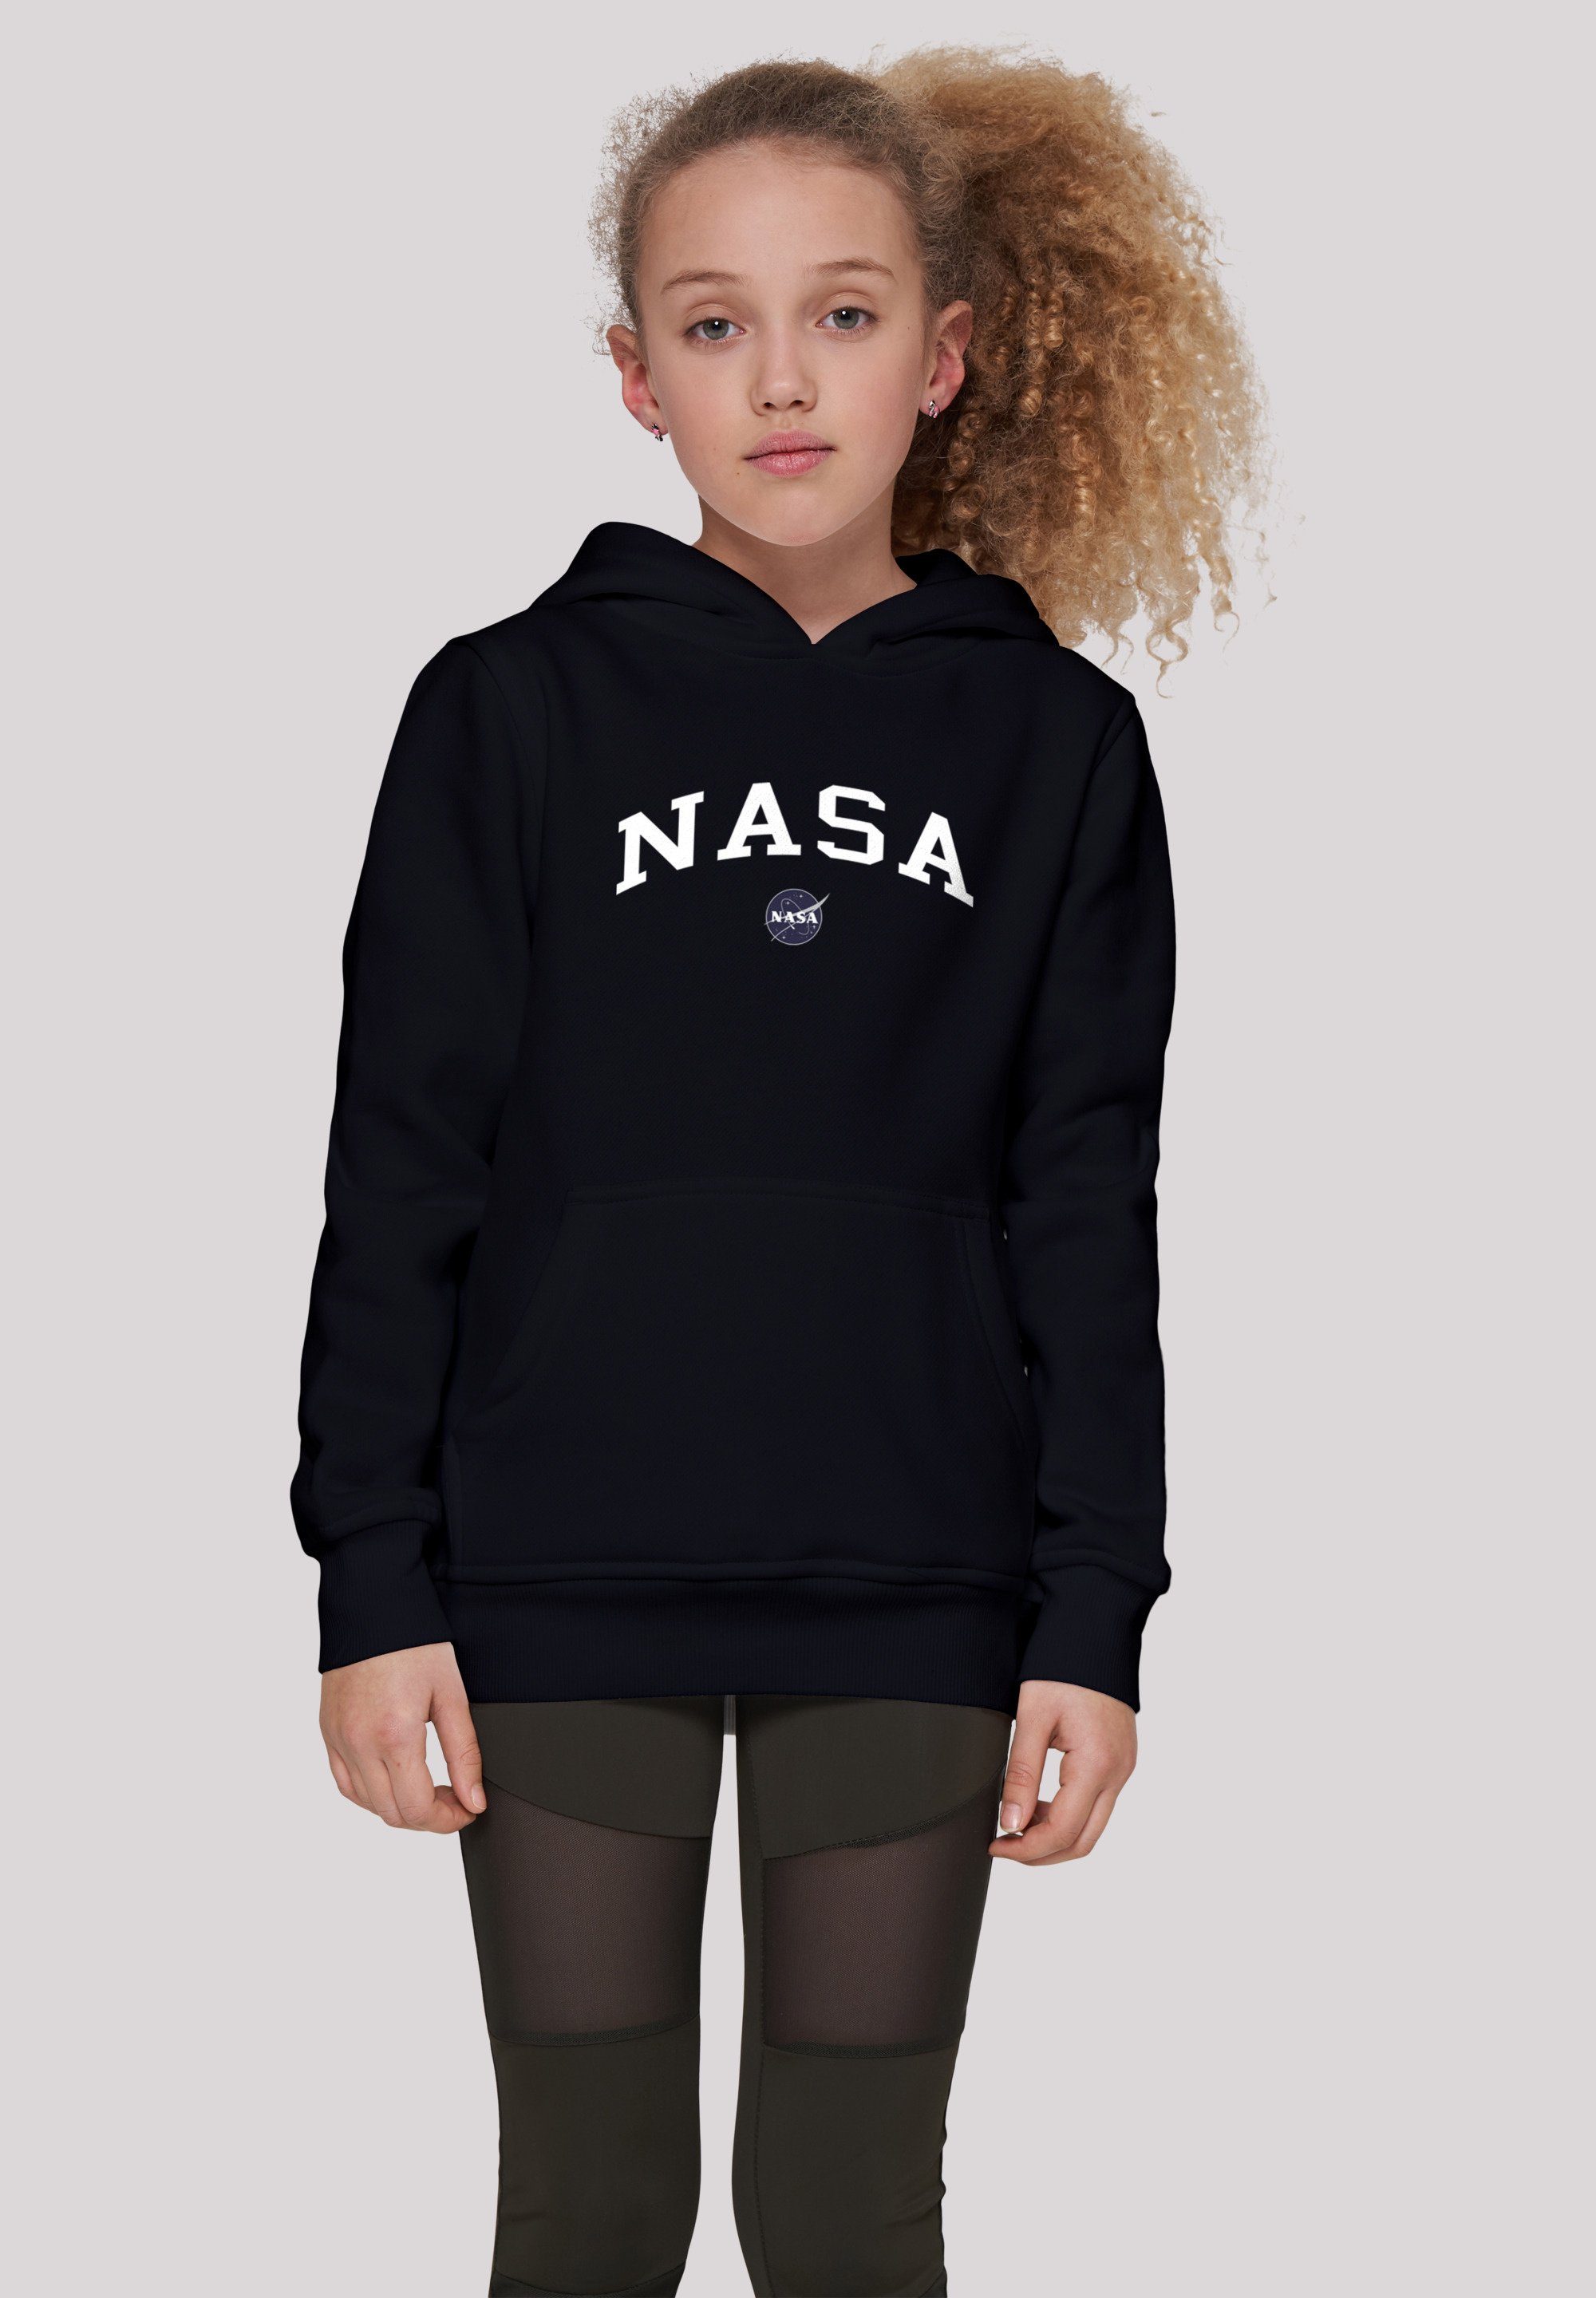 Logo Unisex Collegiate Merch,Jungen,Mädchen,Bedruckt F4NT4STIC Sweatshirt NASA Kinder,Premium